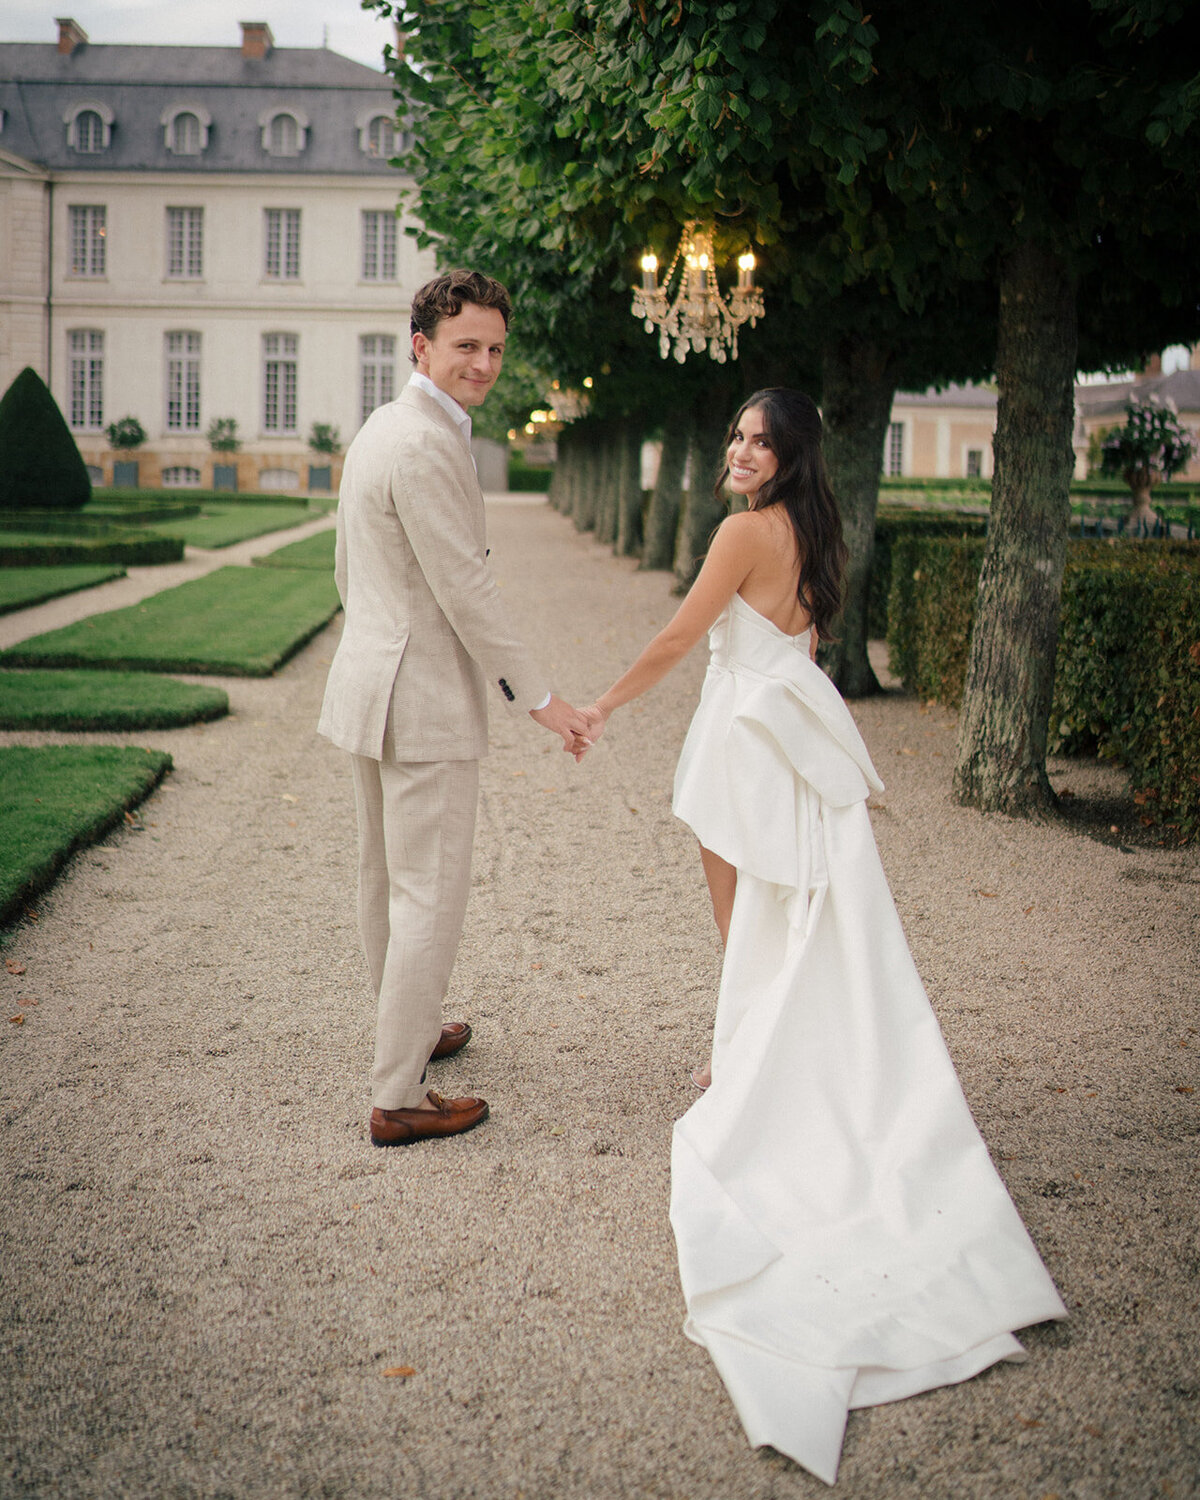 Chateau-du-grand-luce-wedding90